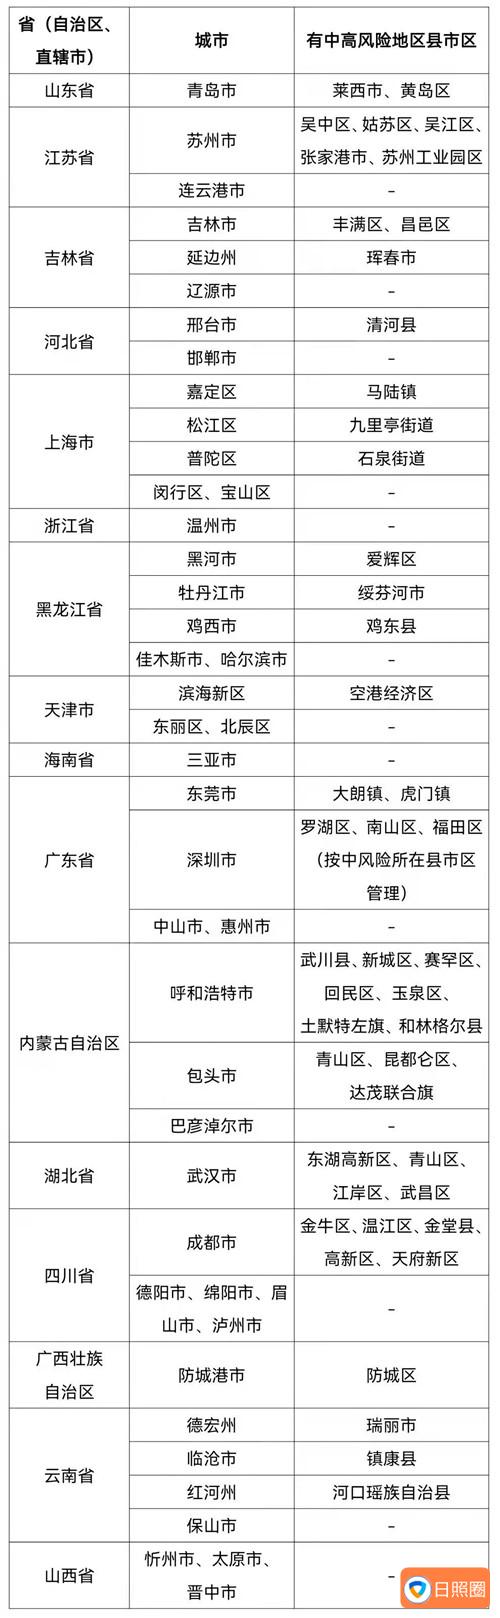 3月6日19时至24时，青岛莱西市新增4例新冠肺炎确诊病例、45例无症状感染者